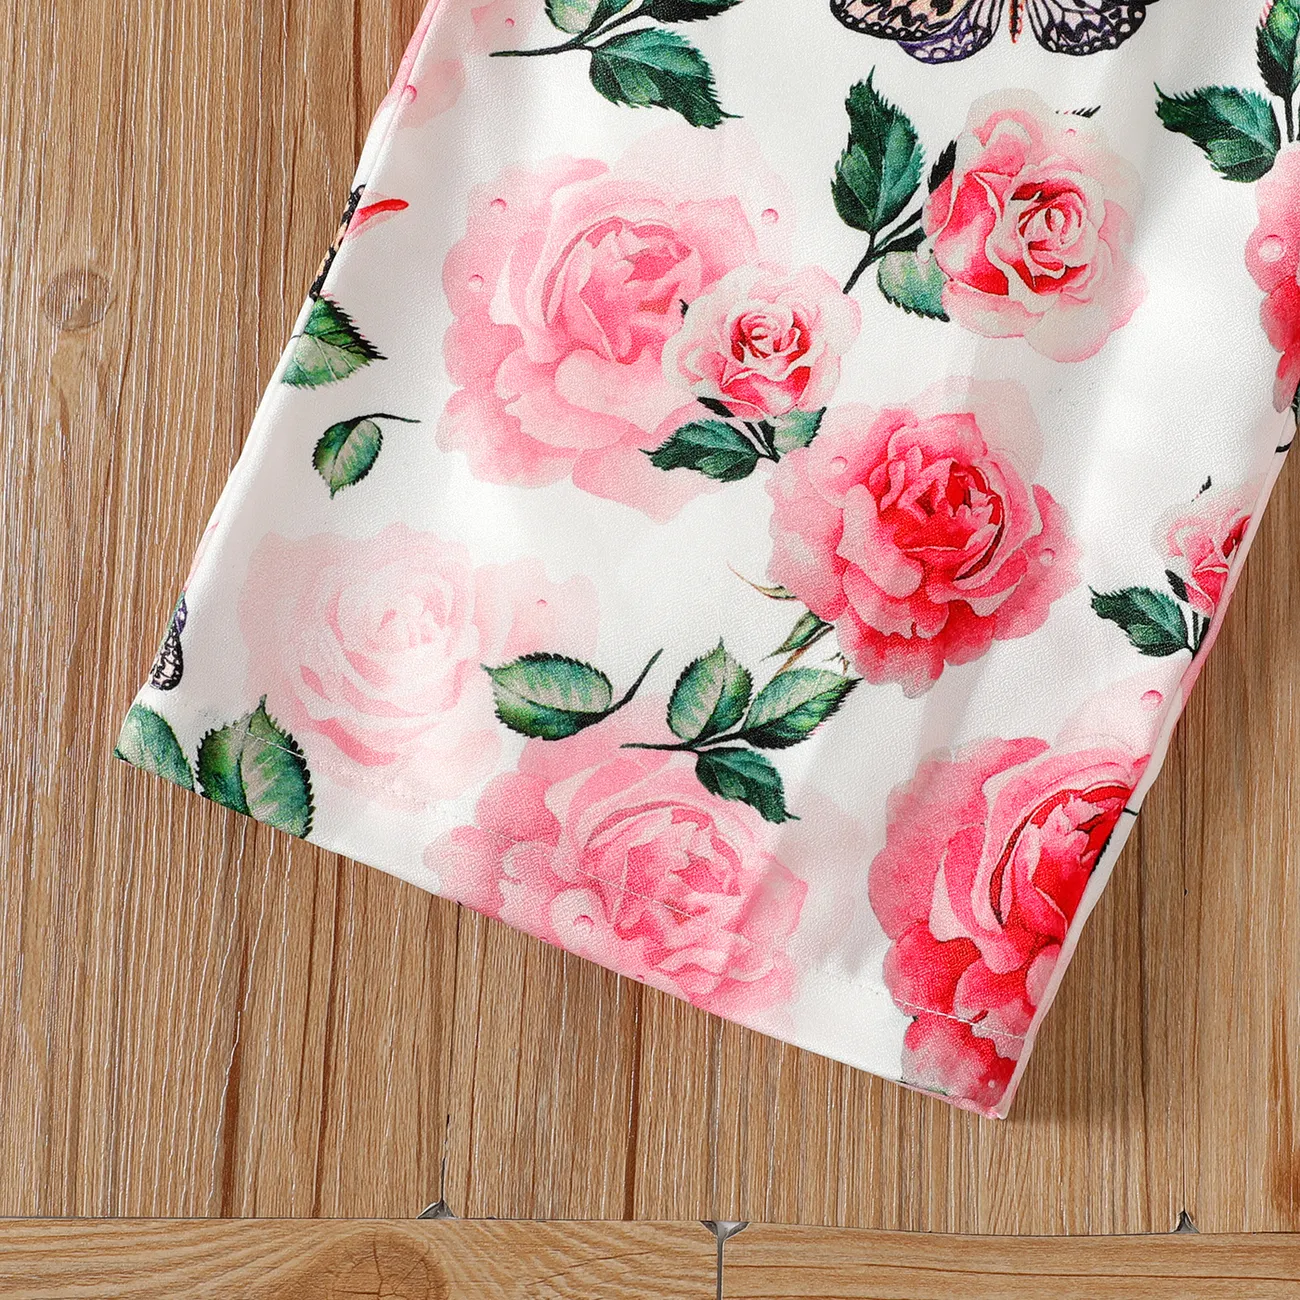 Kid Firl Floral Print Splice Flounce Belted Off Shoulder Cami Jumpsuits Pink big image 1